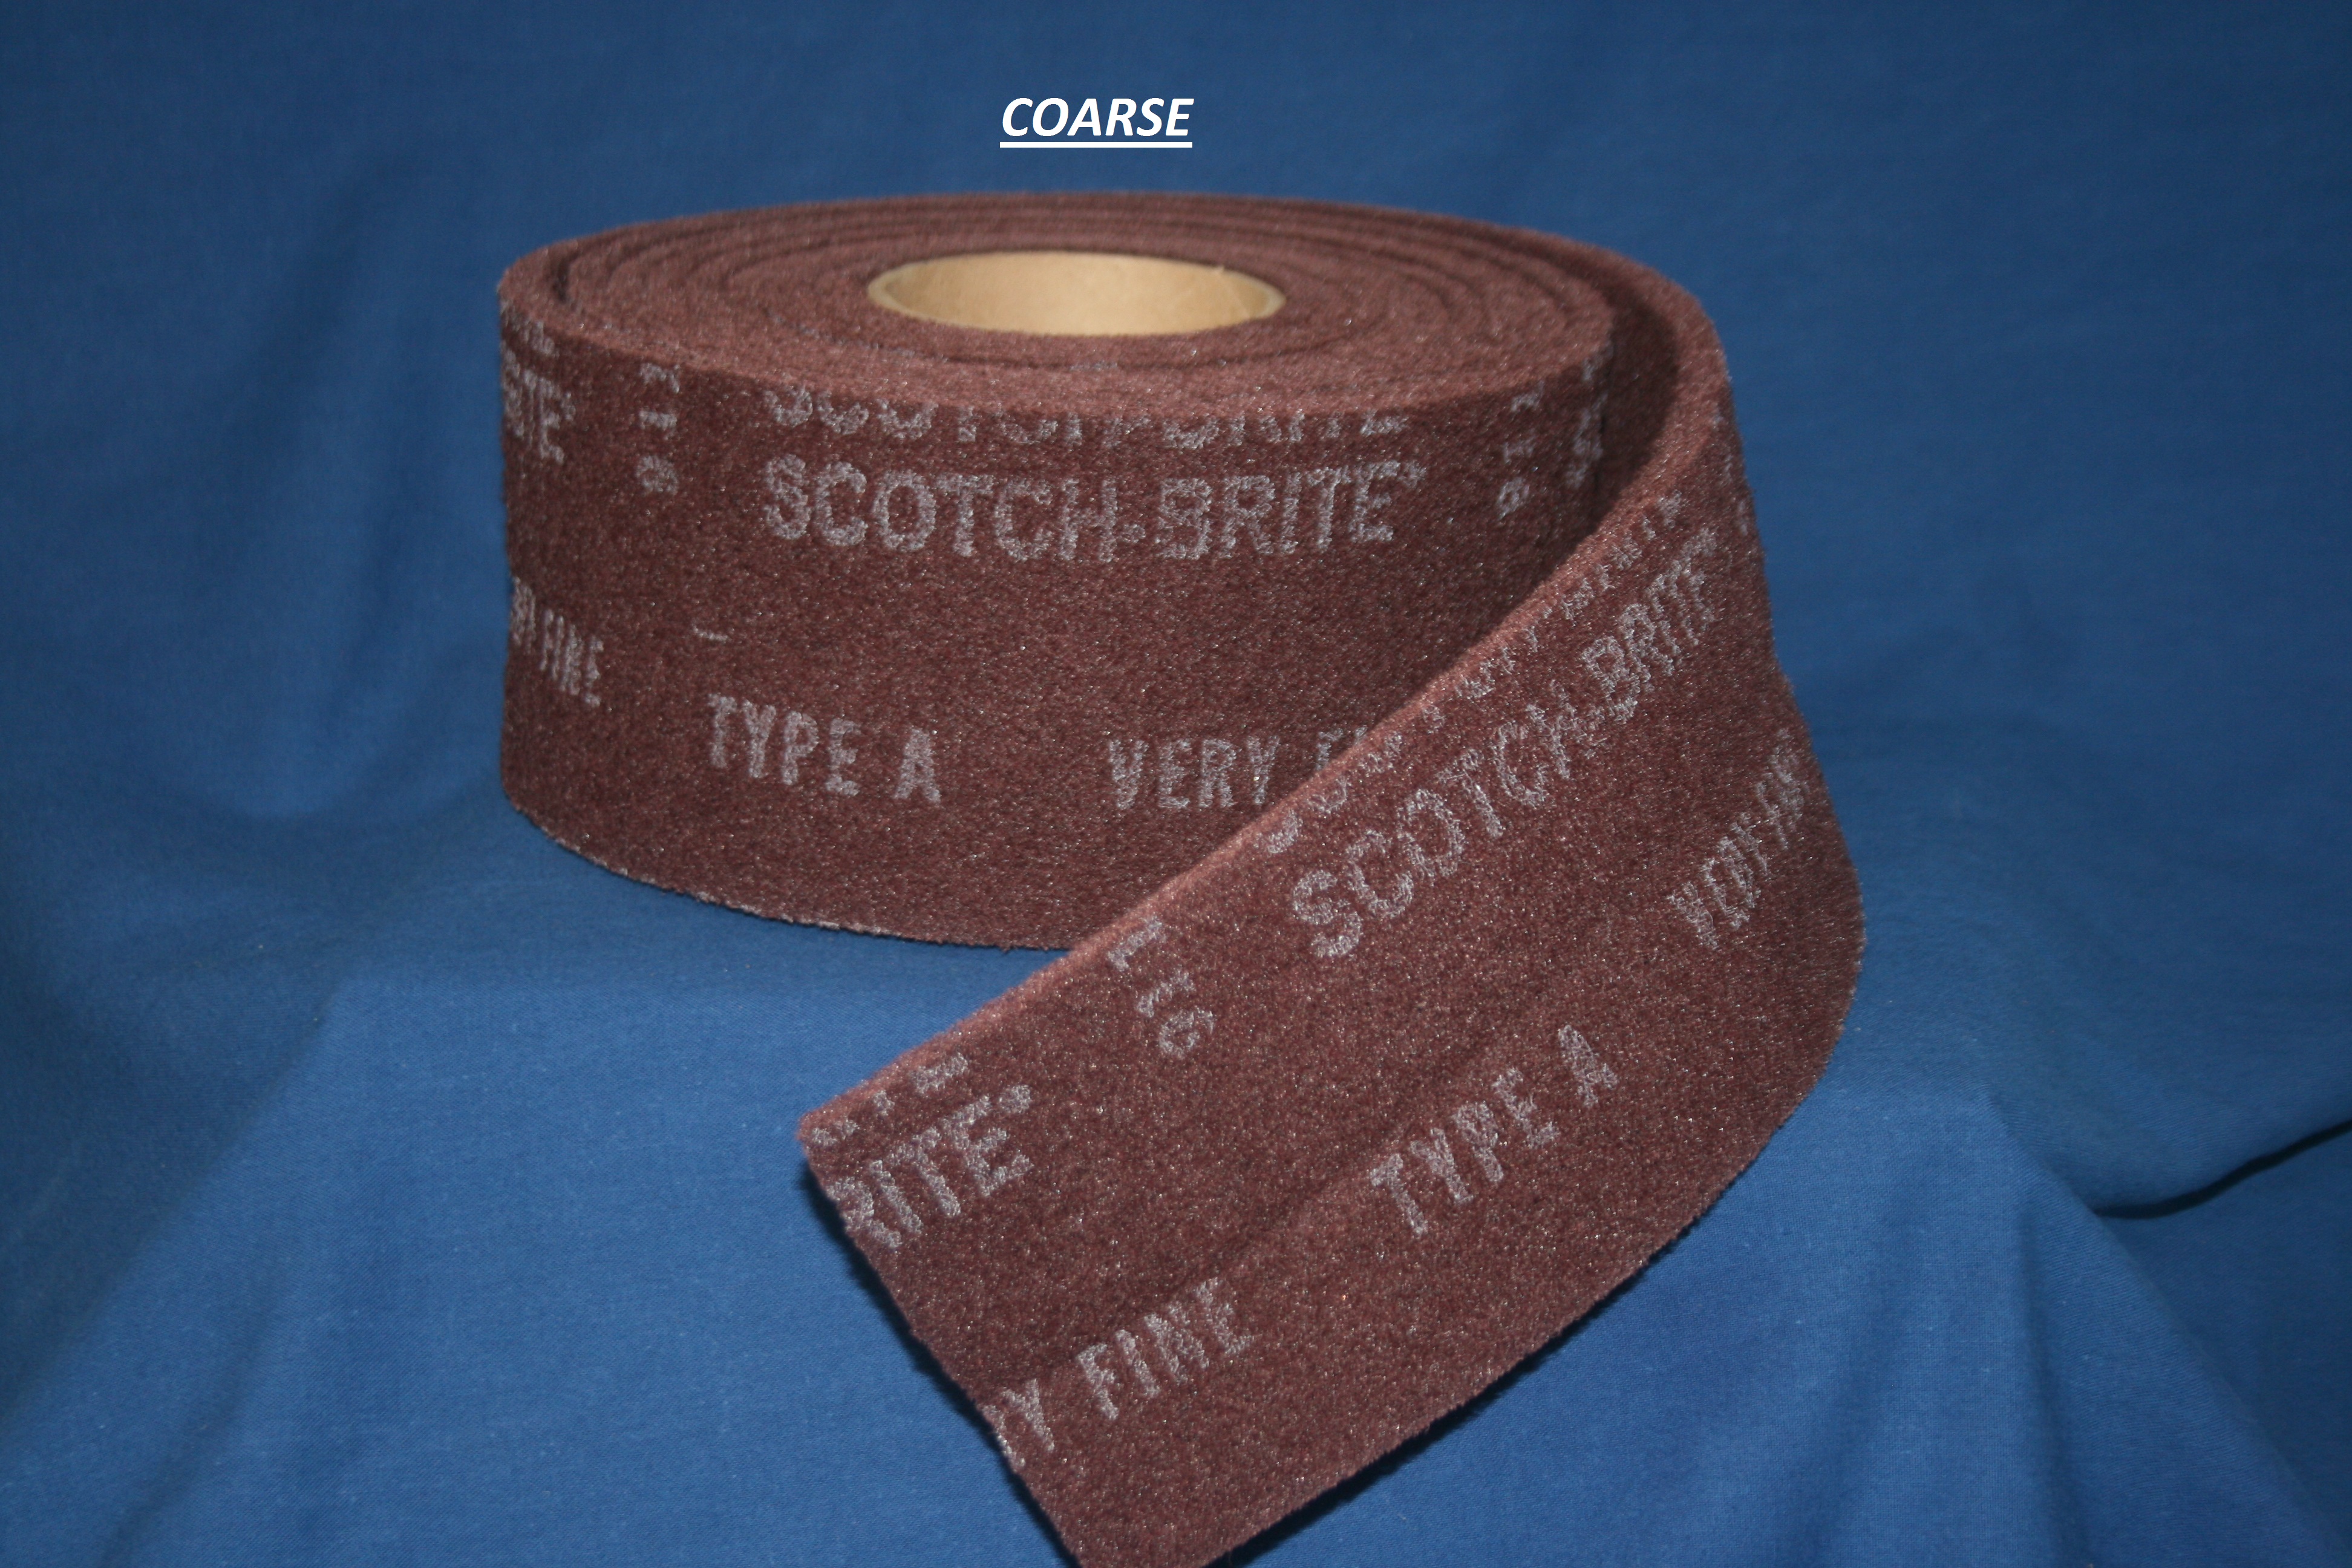 Scotch-Brite Coarse Continuous Roll $4.95 per foot